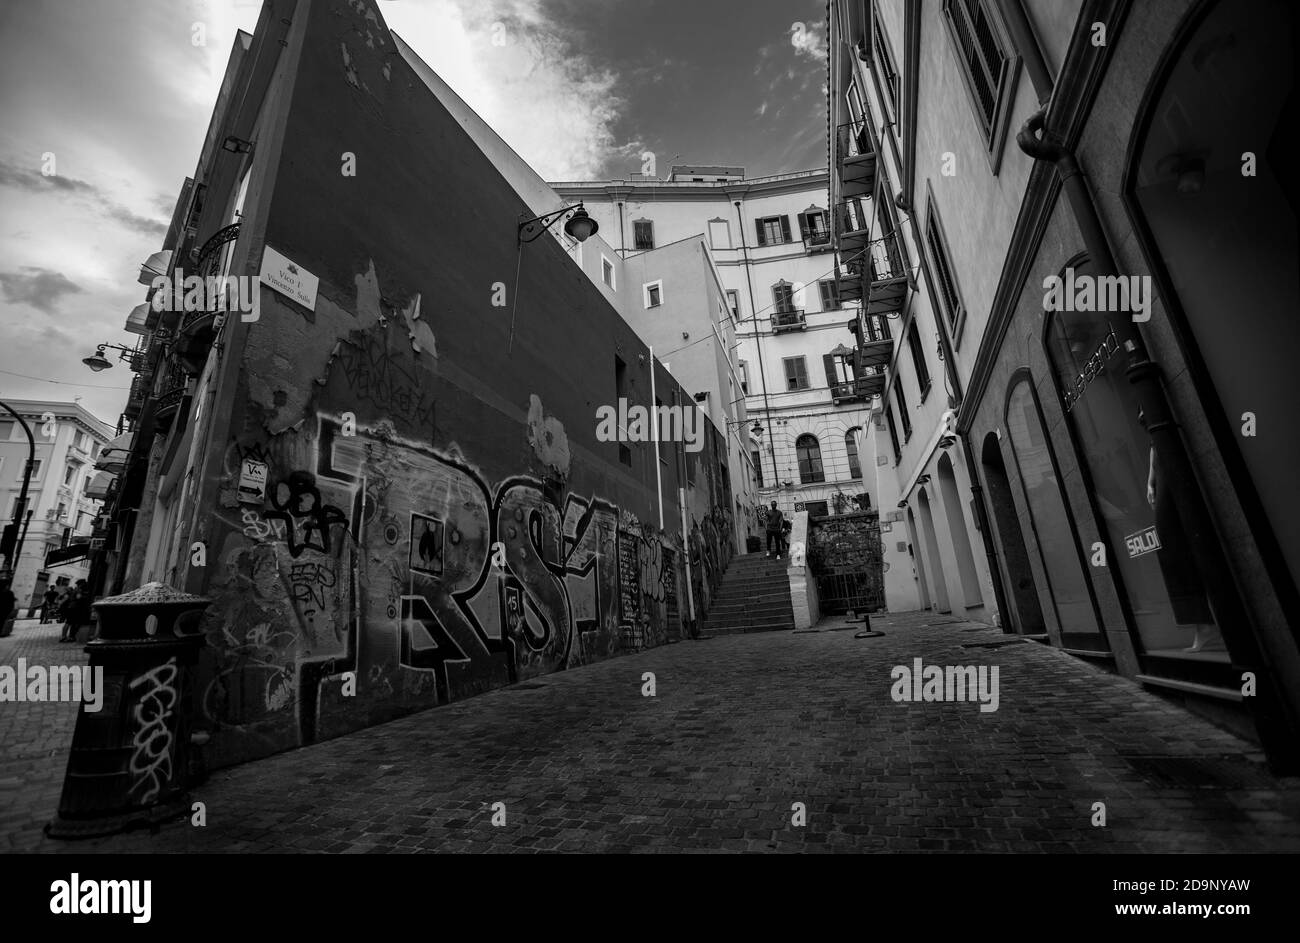 CAGLIARI, ITALY 10 MARCH 2020: Cagliari alleyway with Graffiti Stock Photo